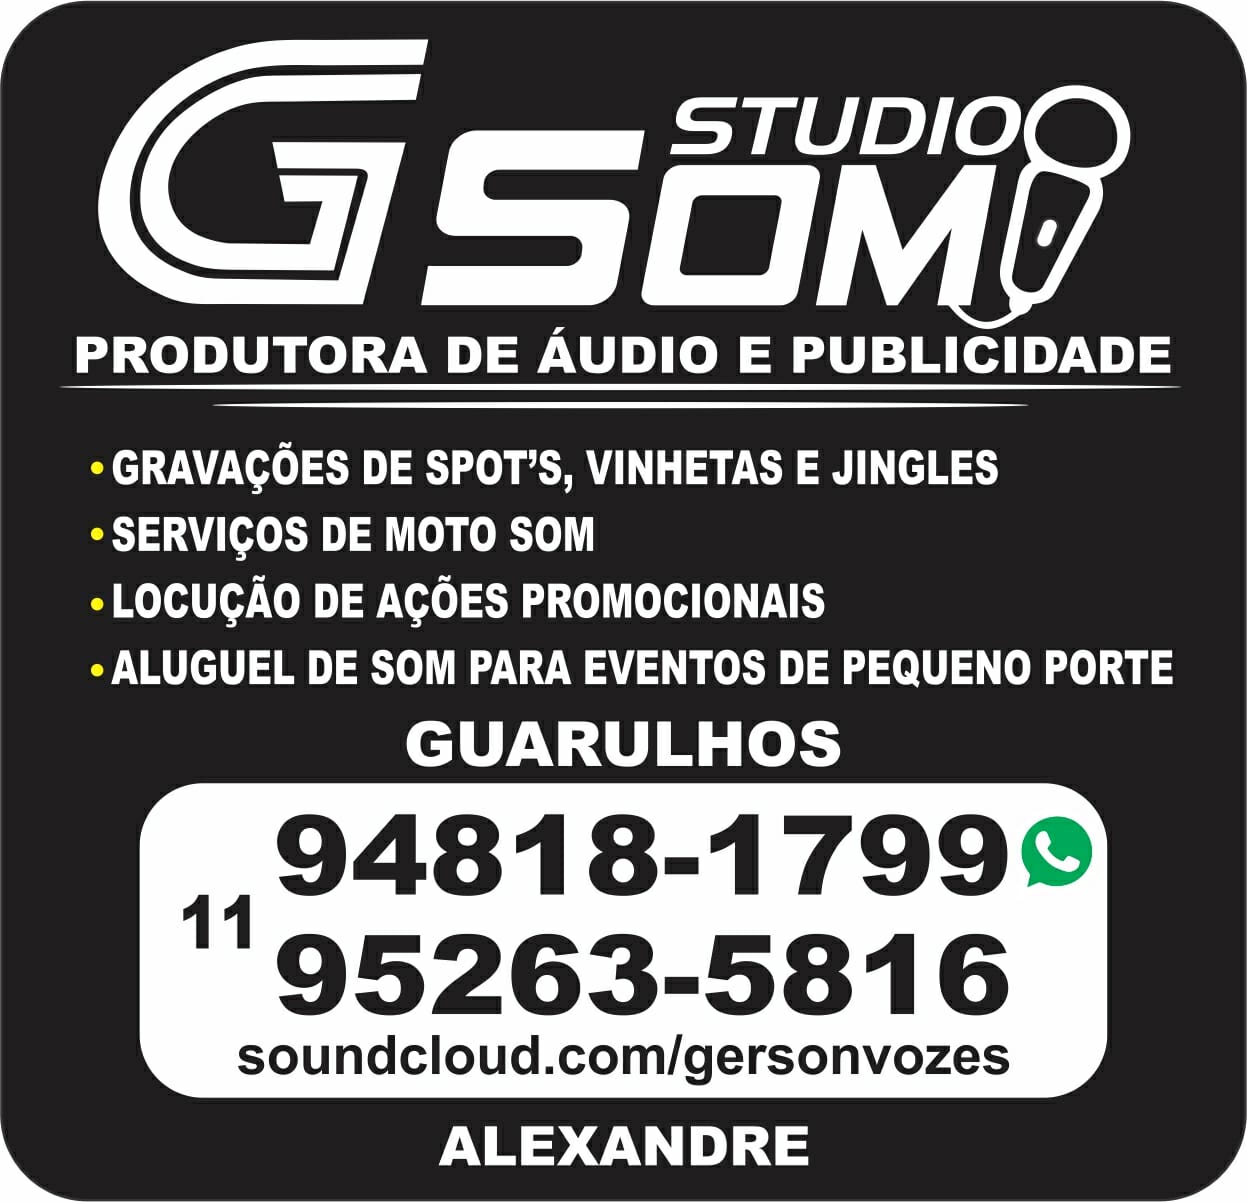 G-SOM STUDIO PRODUTORA DE AUDIO E PUBLICIDADE